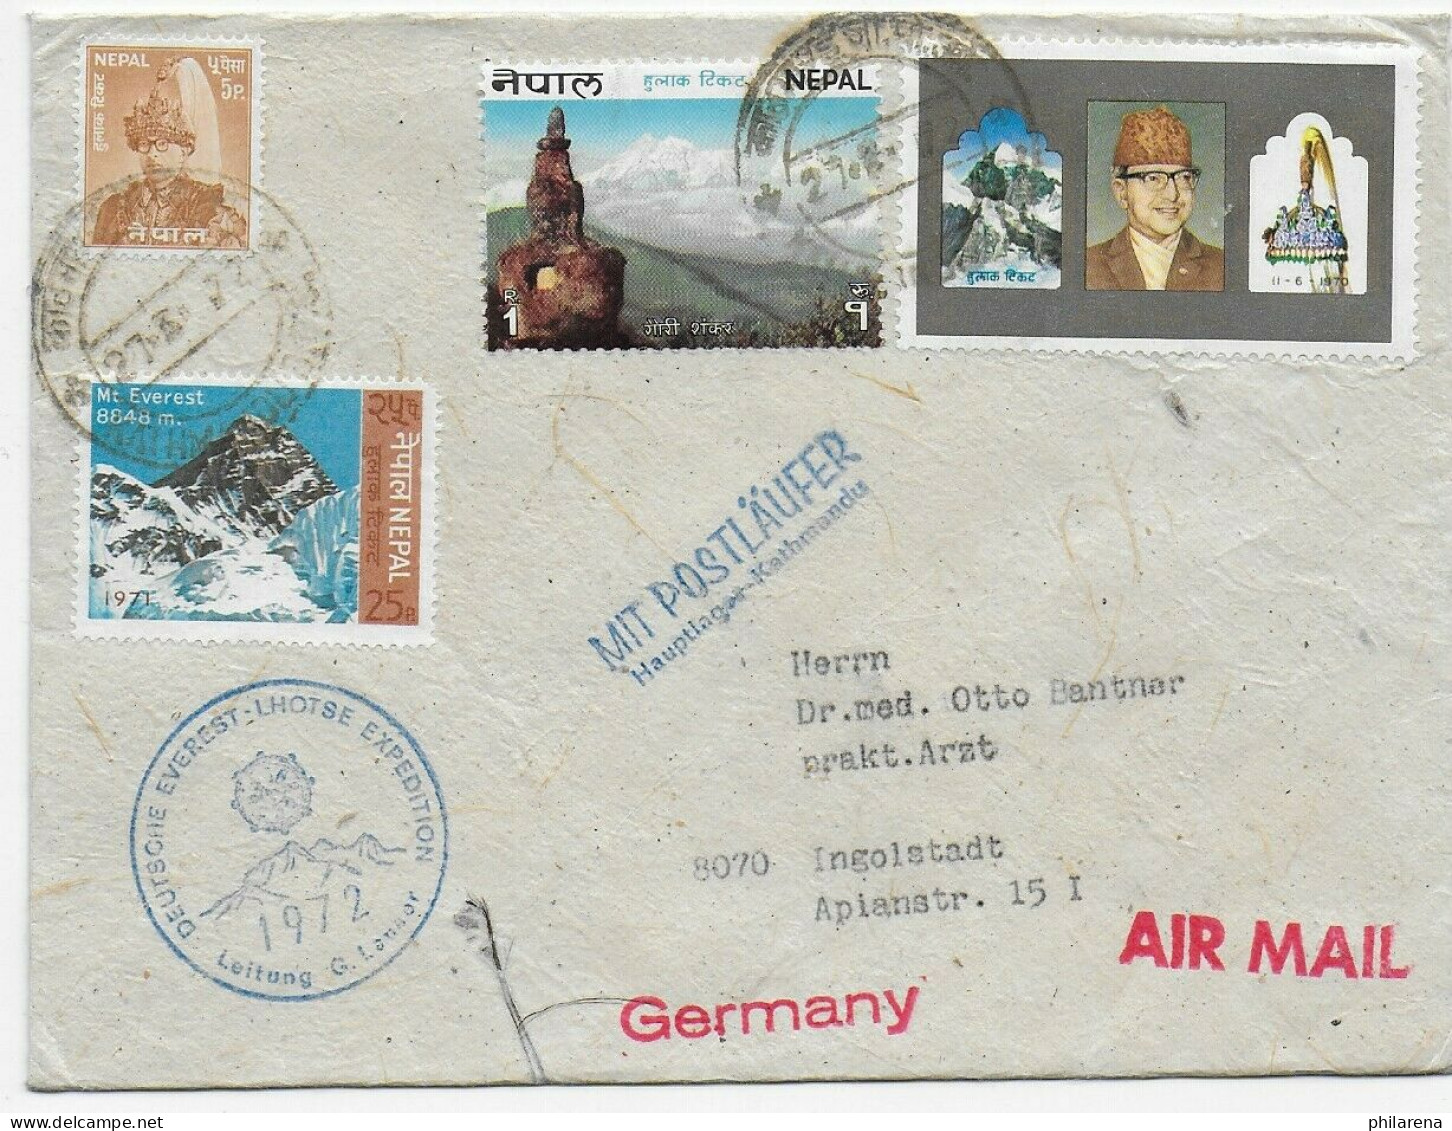 Mit Postläufer, Kathmandu, Deutsche Evererst Lhotse Expedition 1972, Air Mail - Nepal